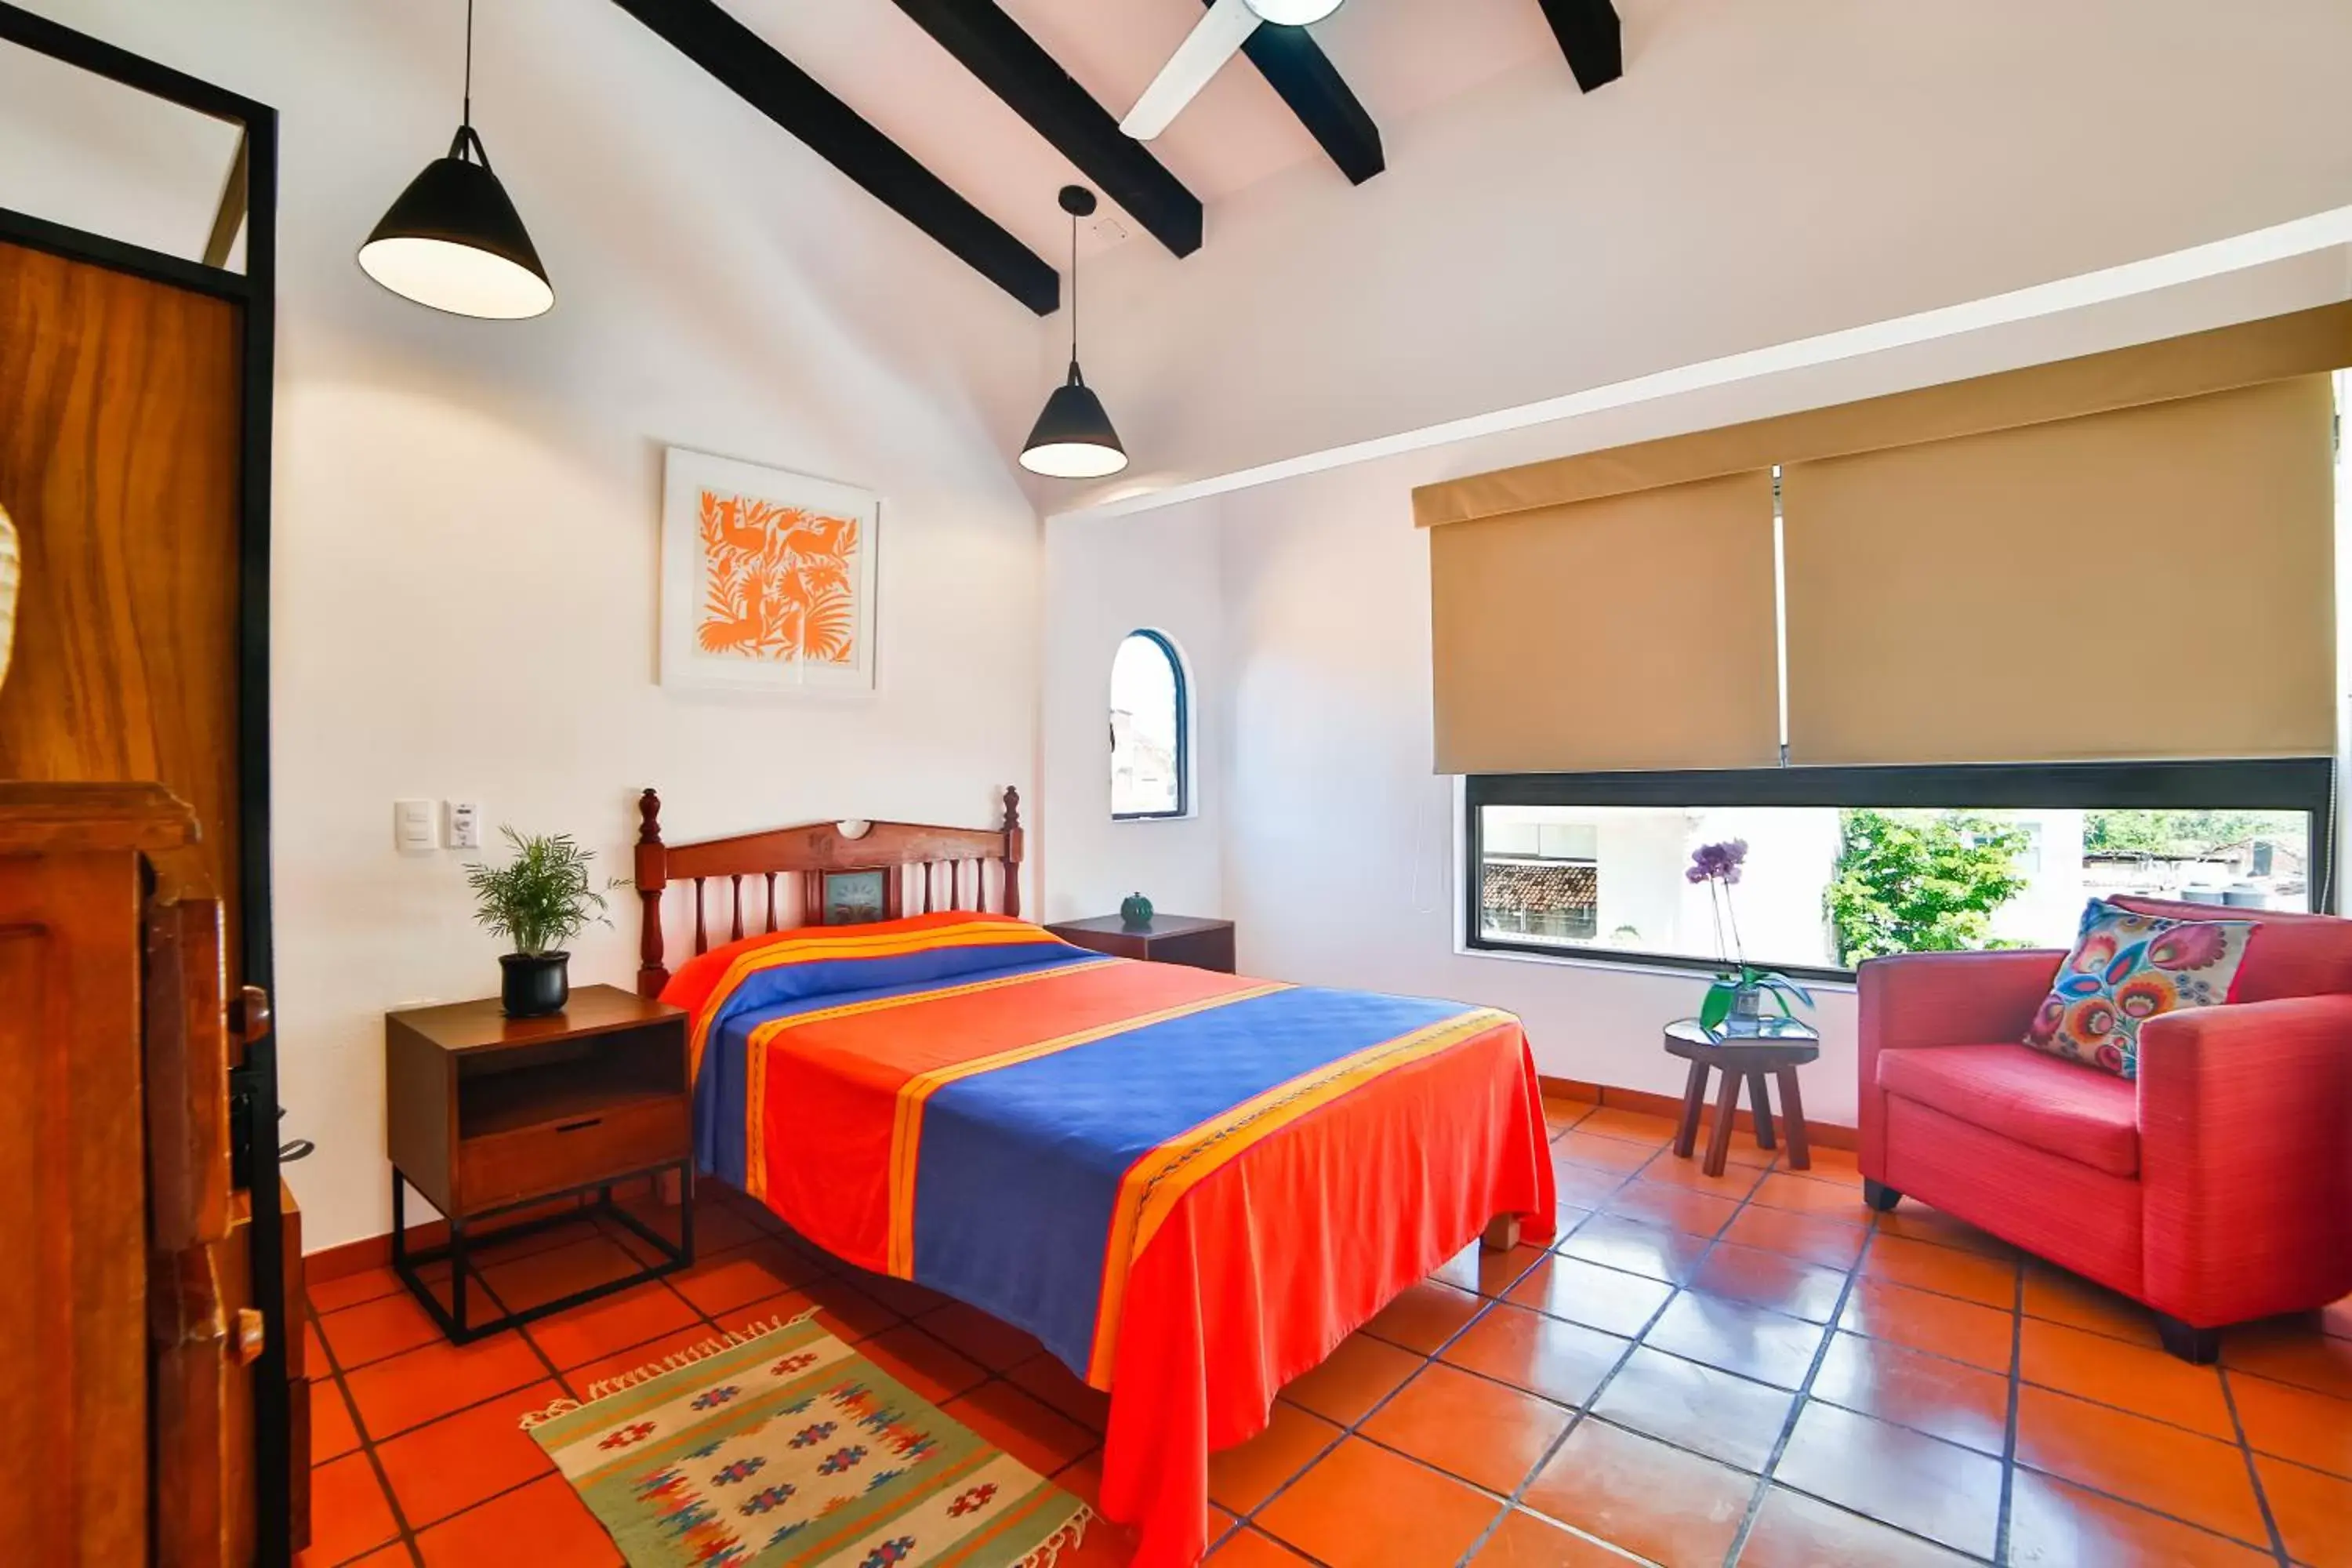 Bed, Room Photo in Hotel Villa del Mar Tradicional